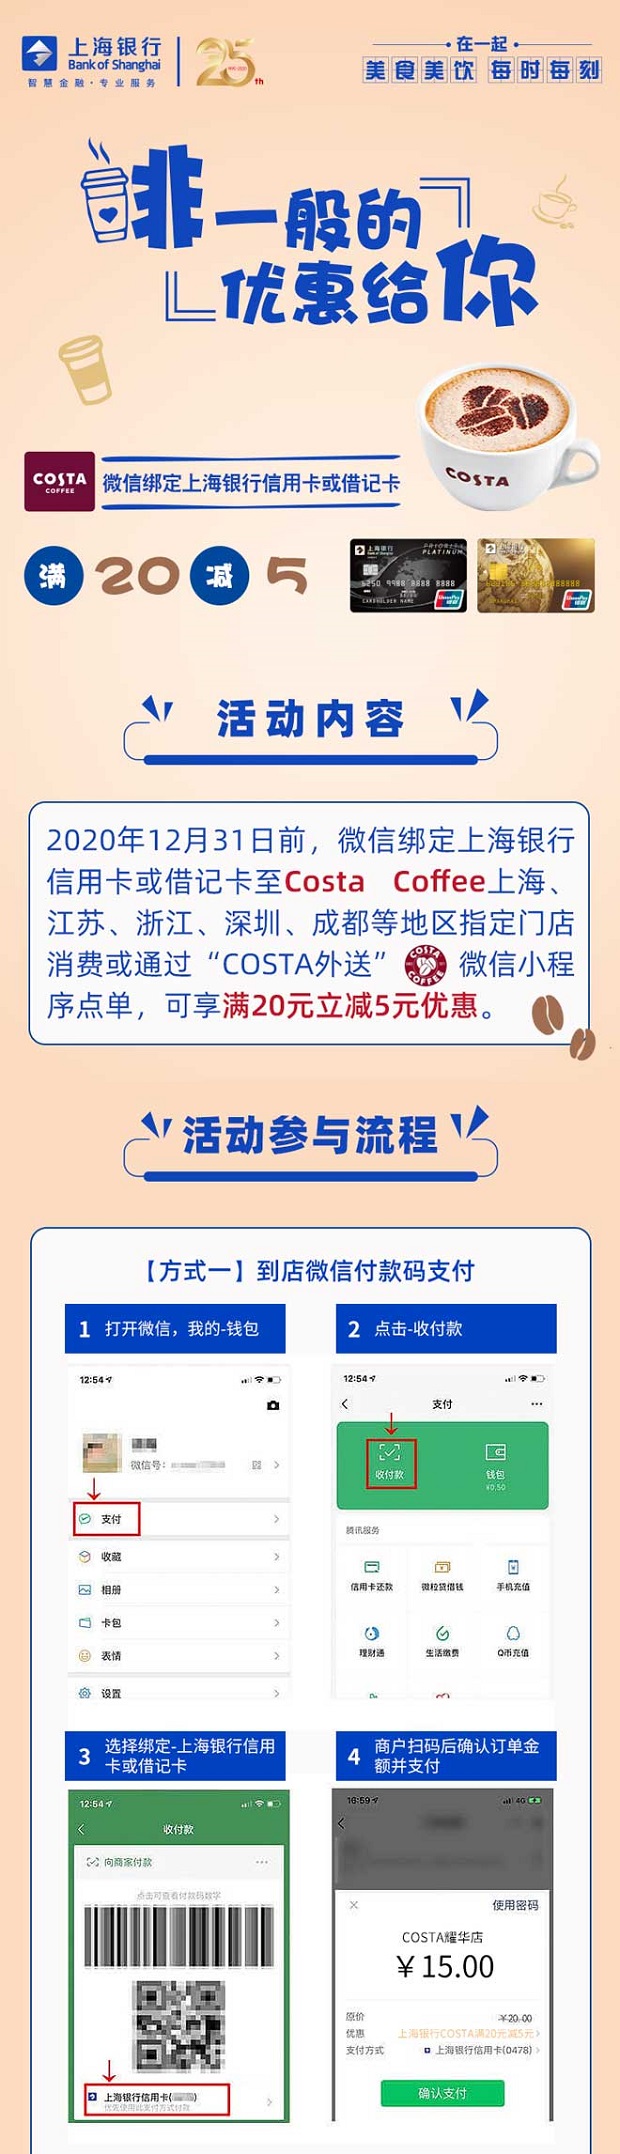 上海银行信用卡Costa Coffee满20减5元